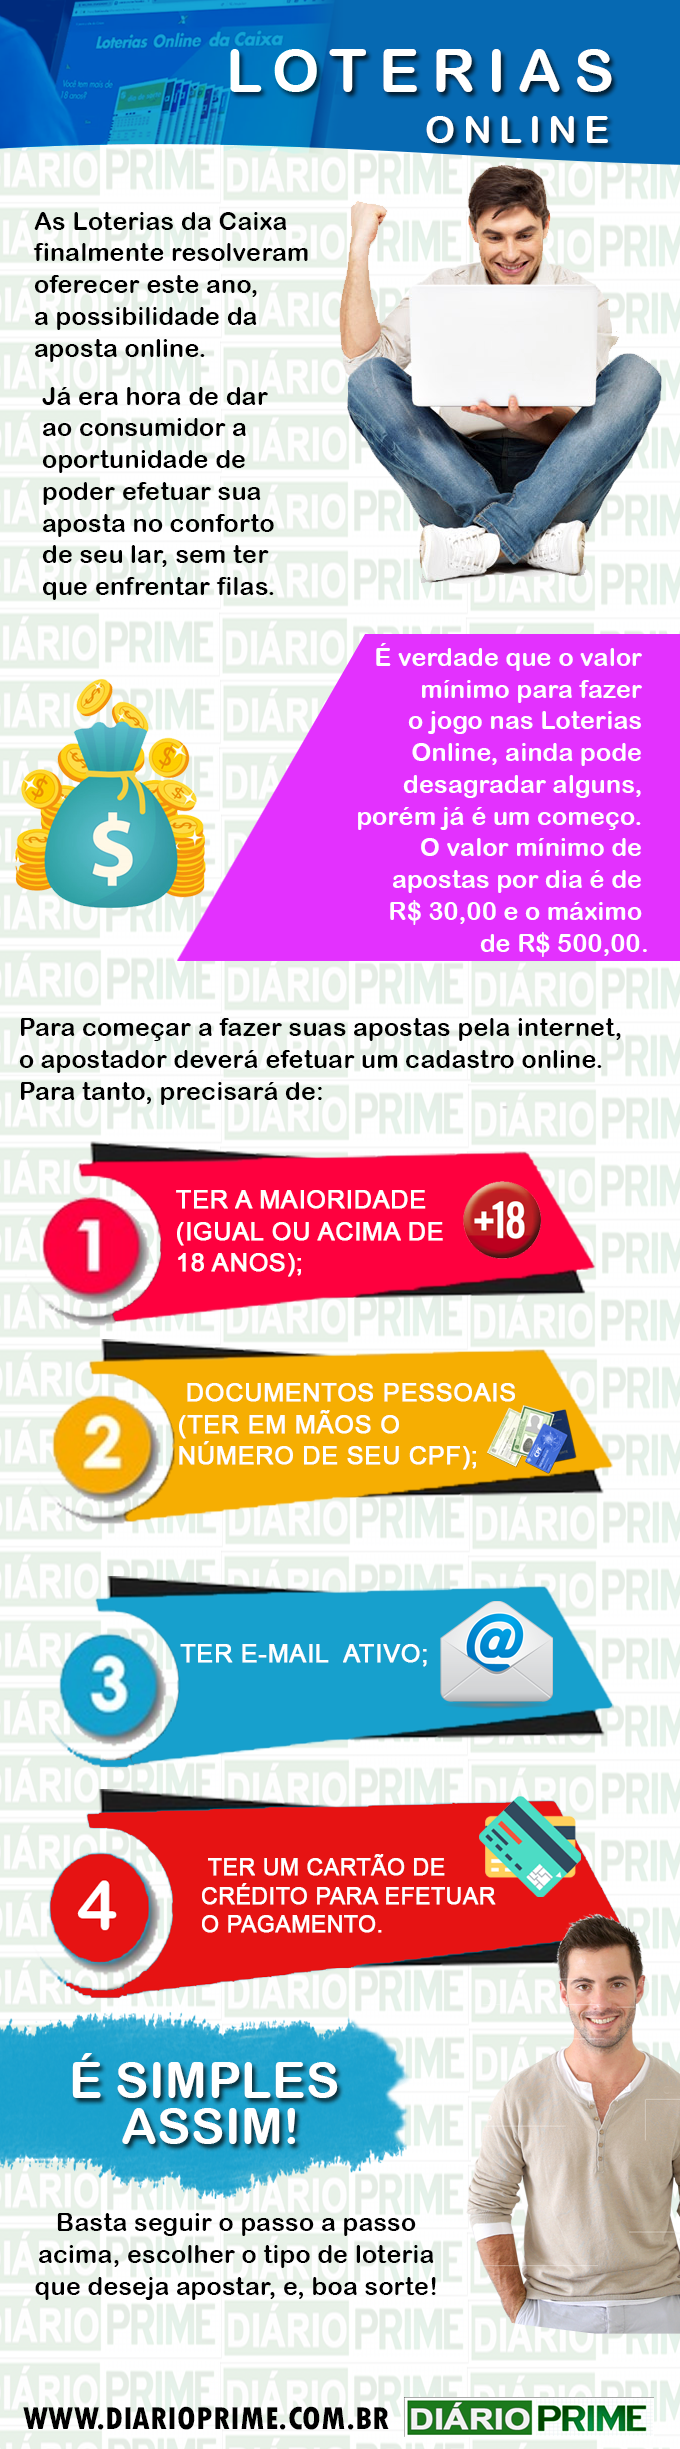 Como jogar na Loterias pela internet / infográfico : diarioprime.com.br